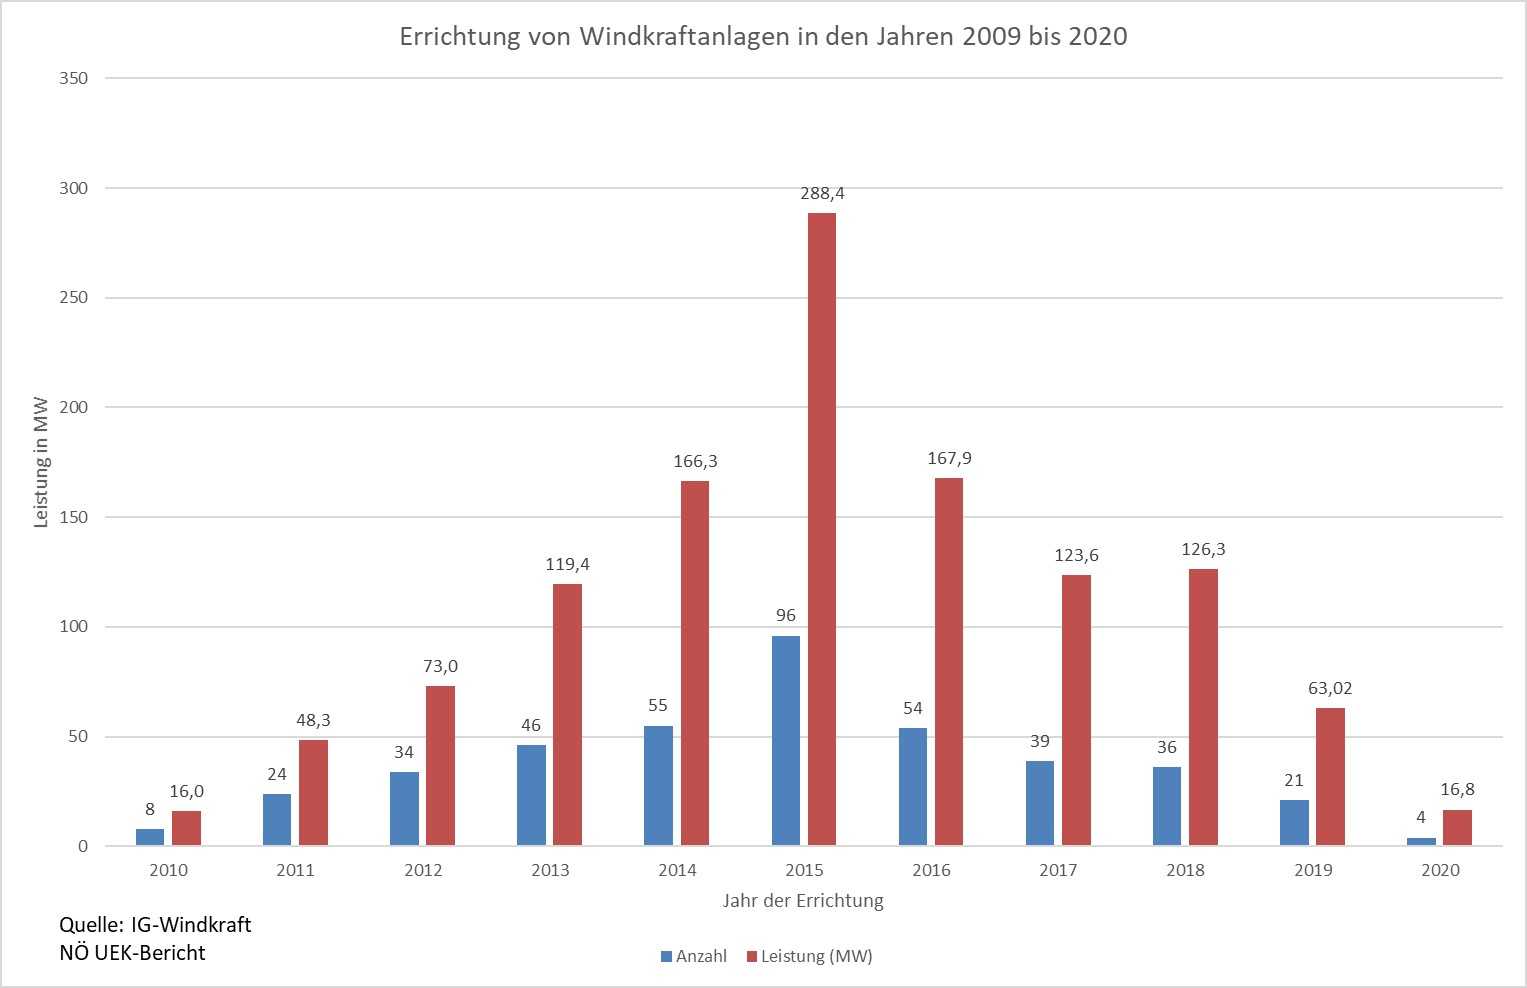 Errichtung von Windkraftanlagen in Niederösterreich